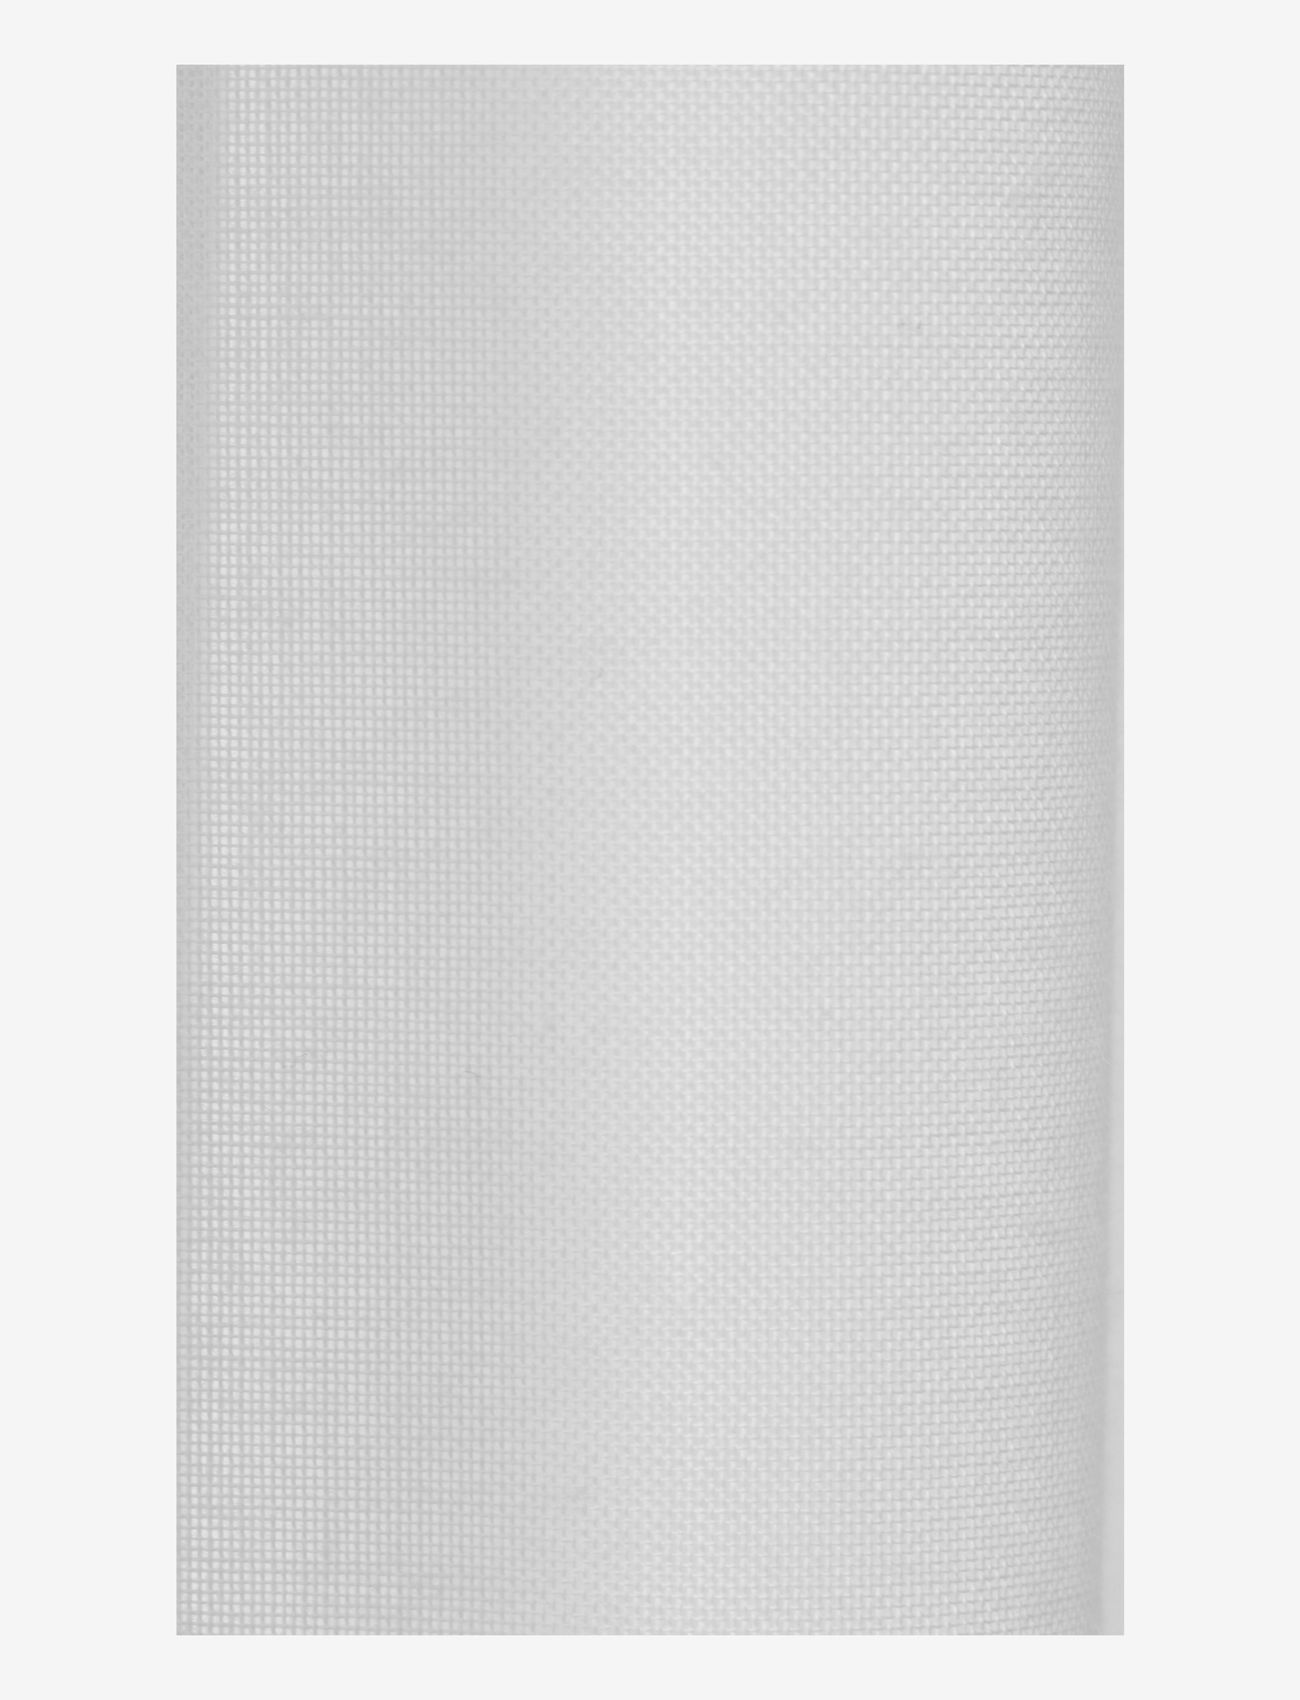 Mimou - Curtain Grace Double width - ilgos užuolaidos - white - 1